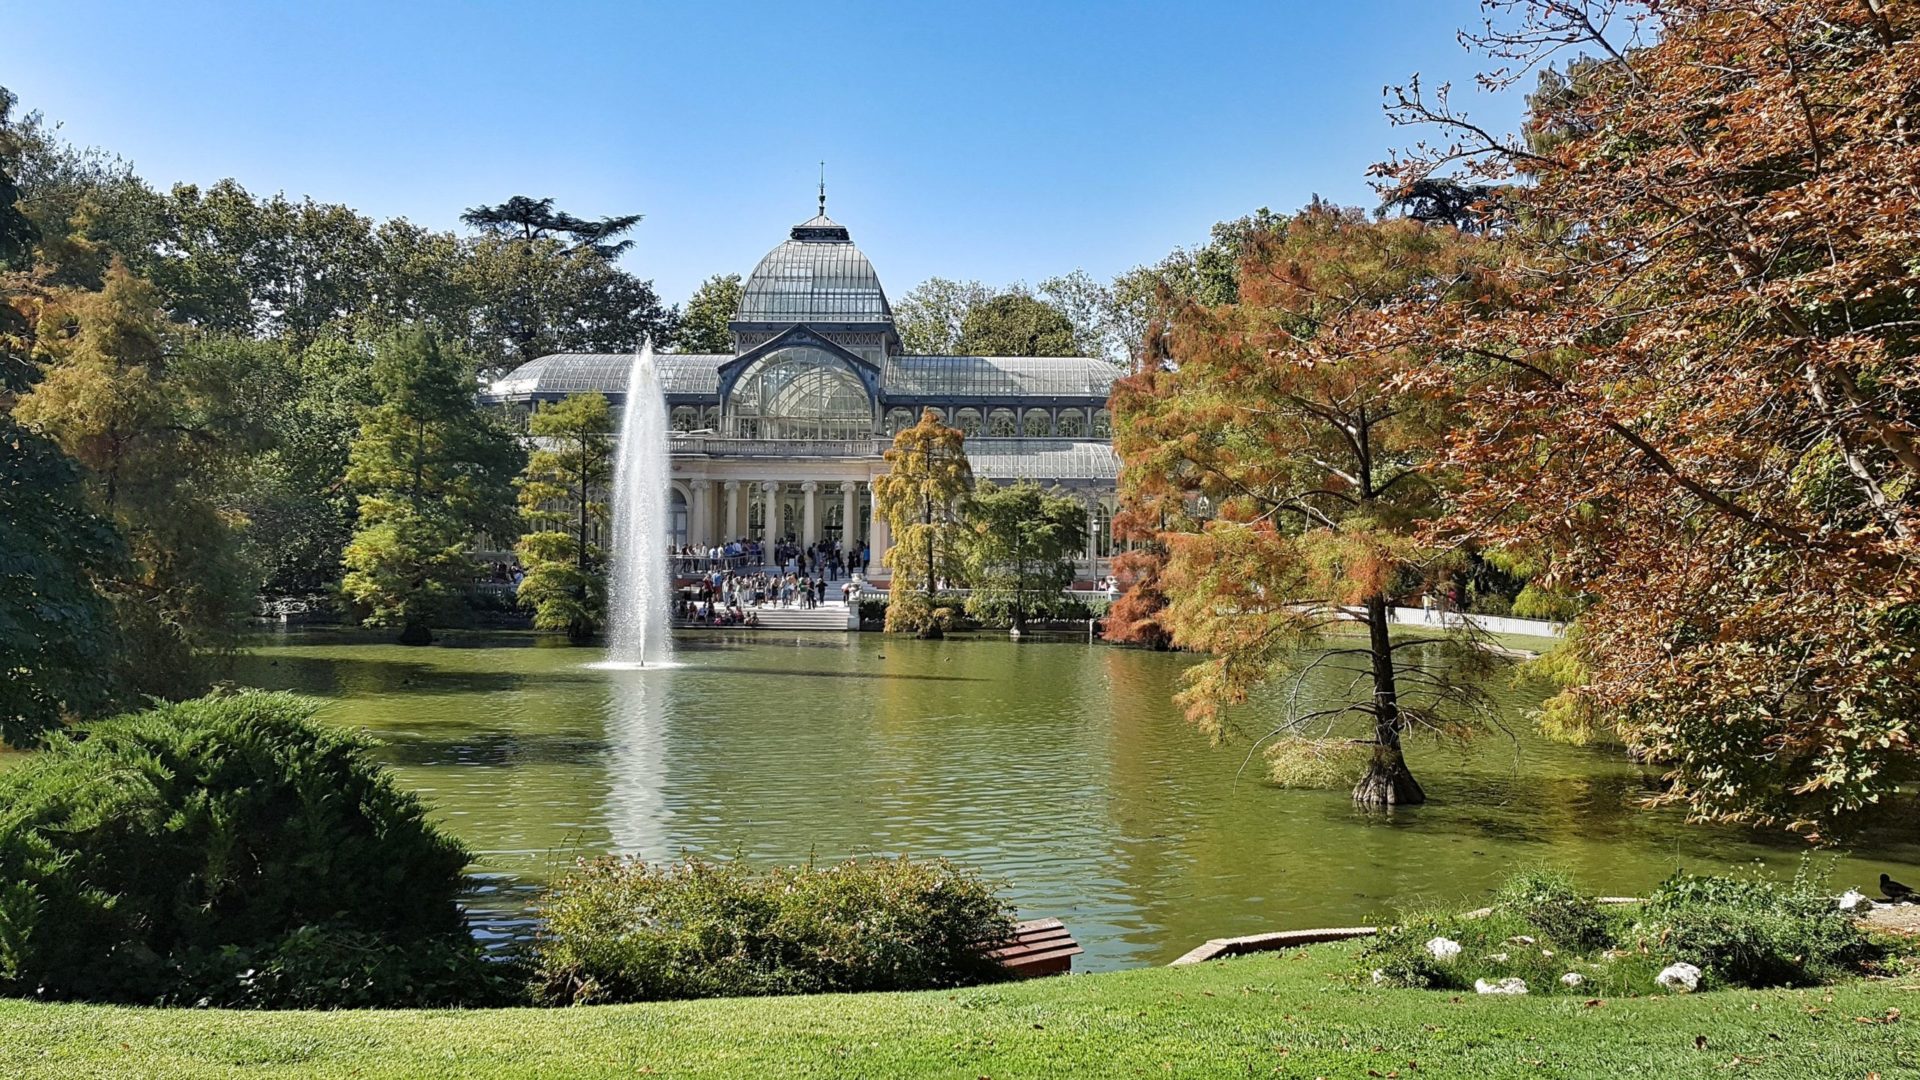 Palacio de Cristal im Parque de El Retiro in Madrid, Spanien.